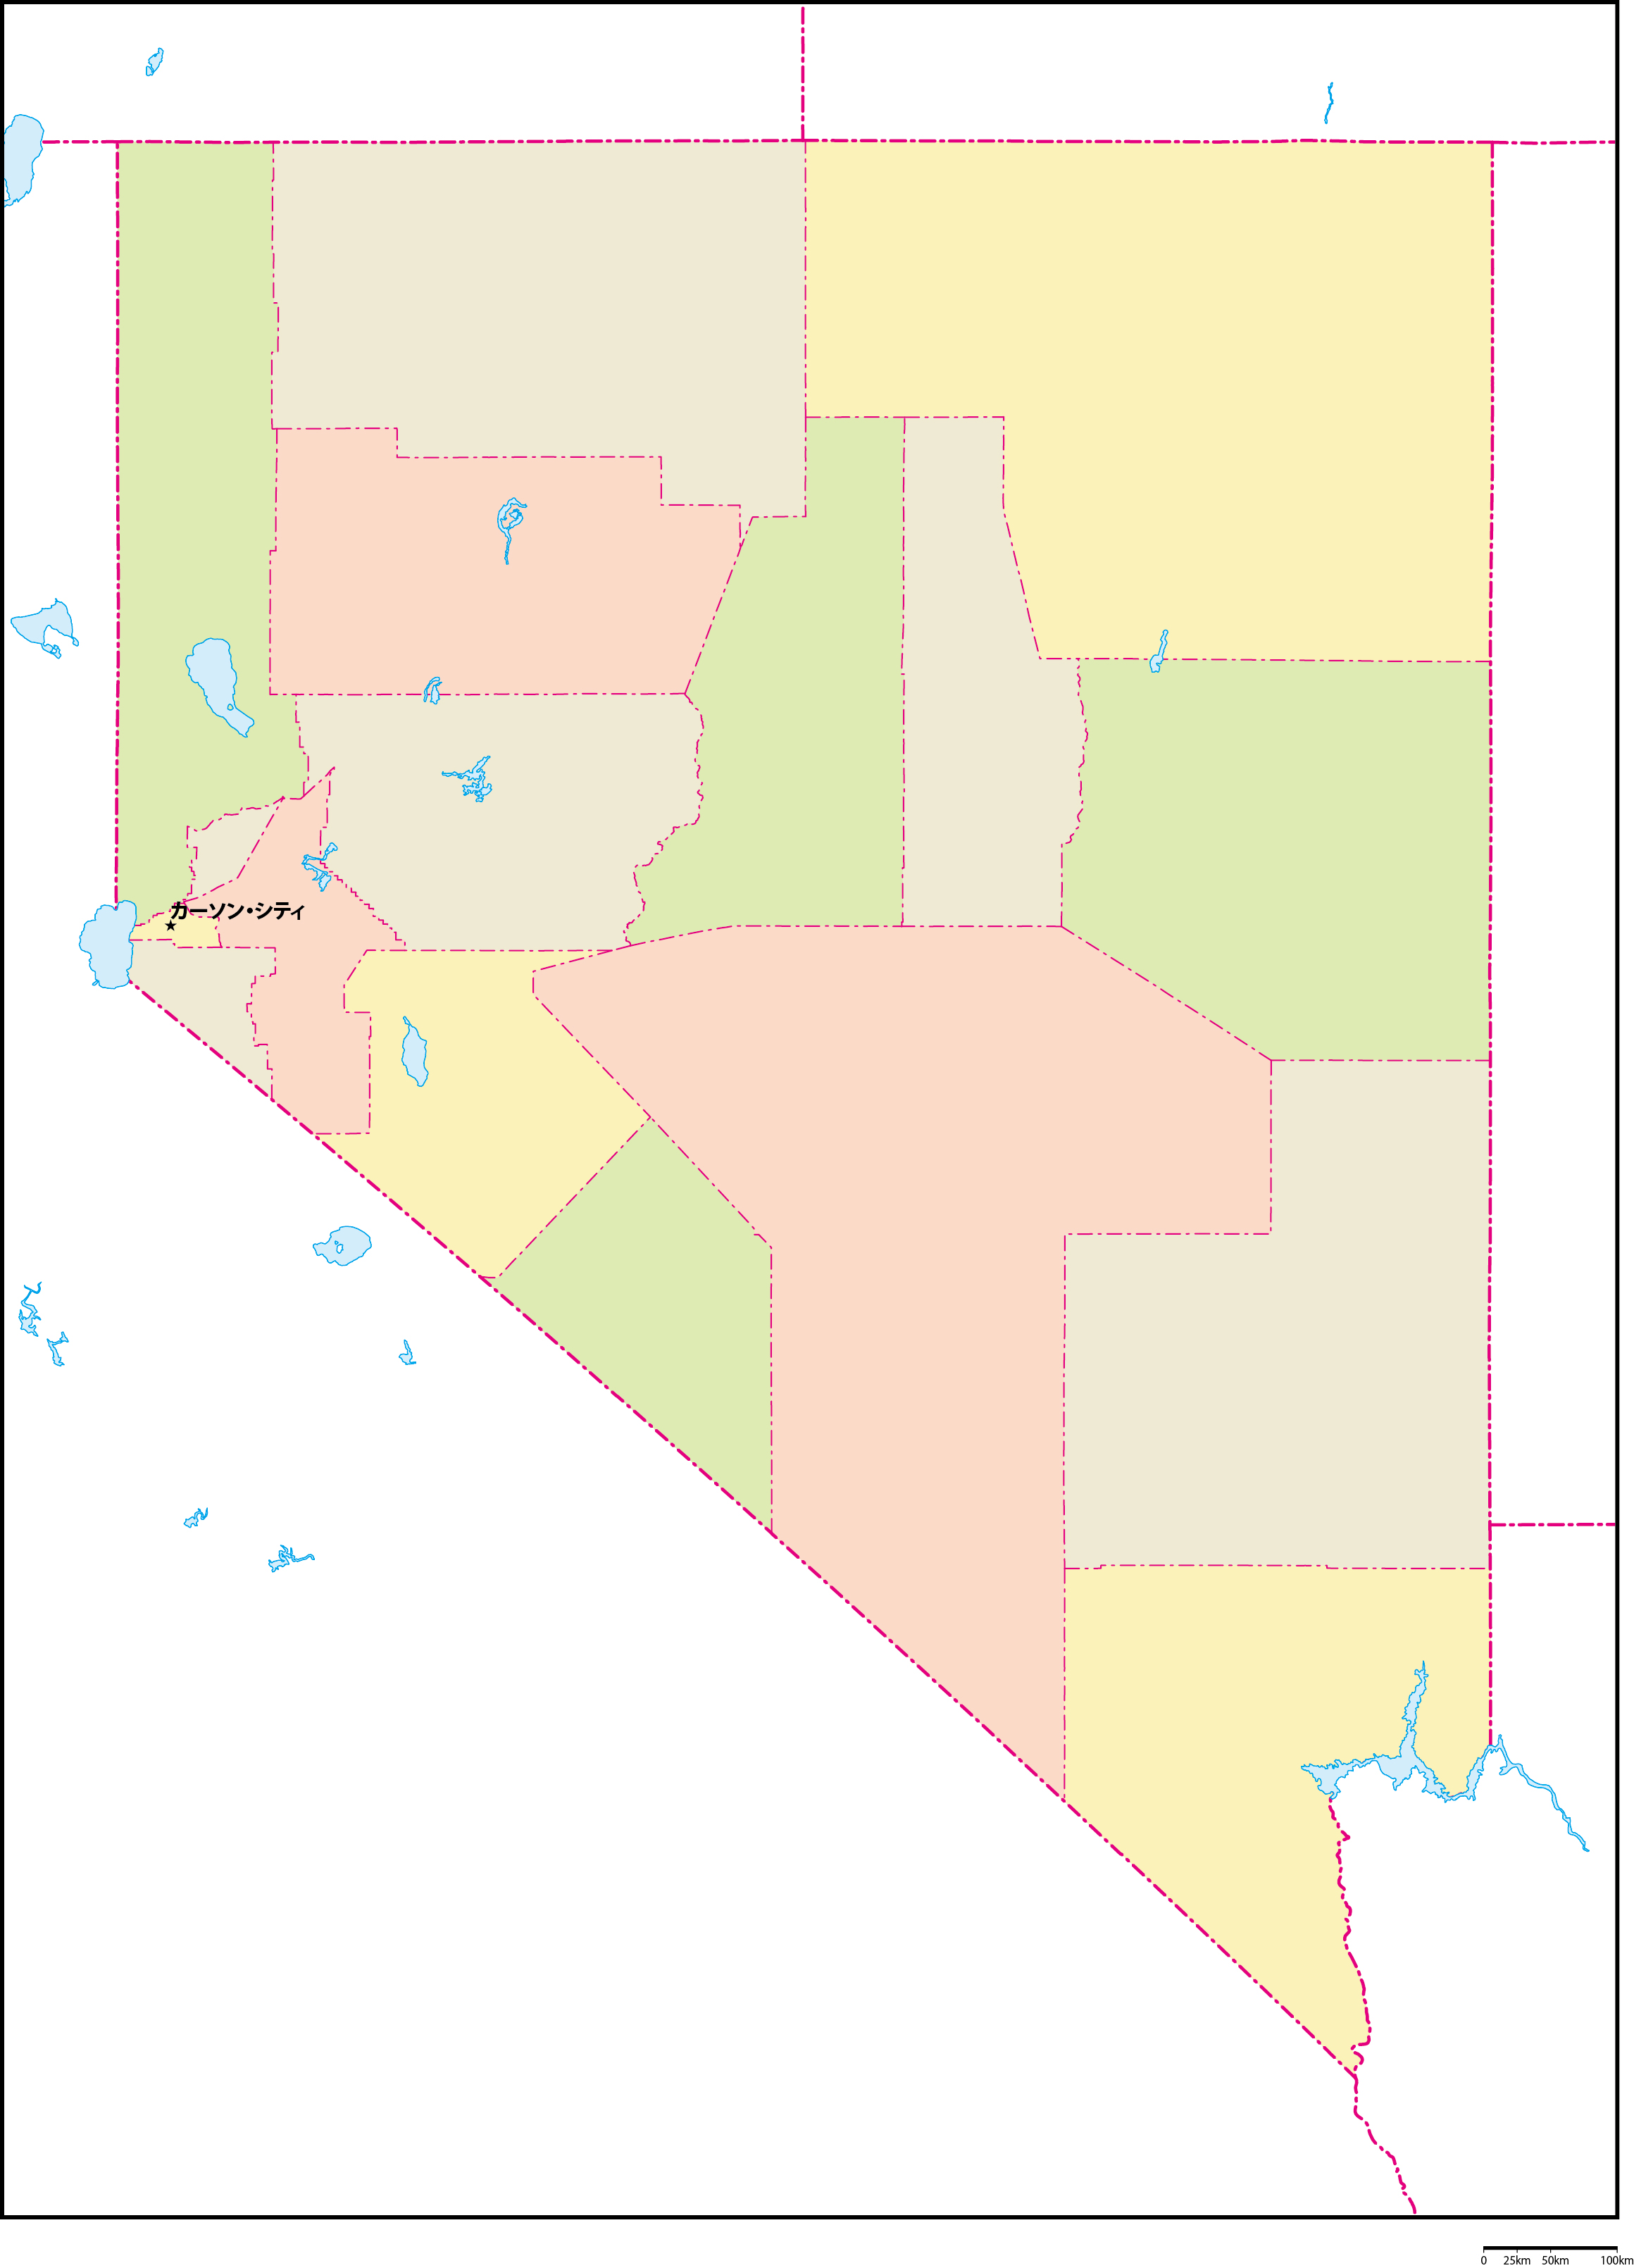 ネバダ州郡色分け地図州都あり(日本語)フリーデータの画像